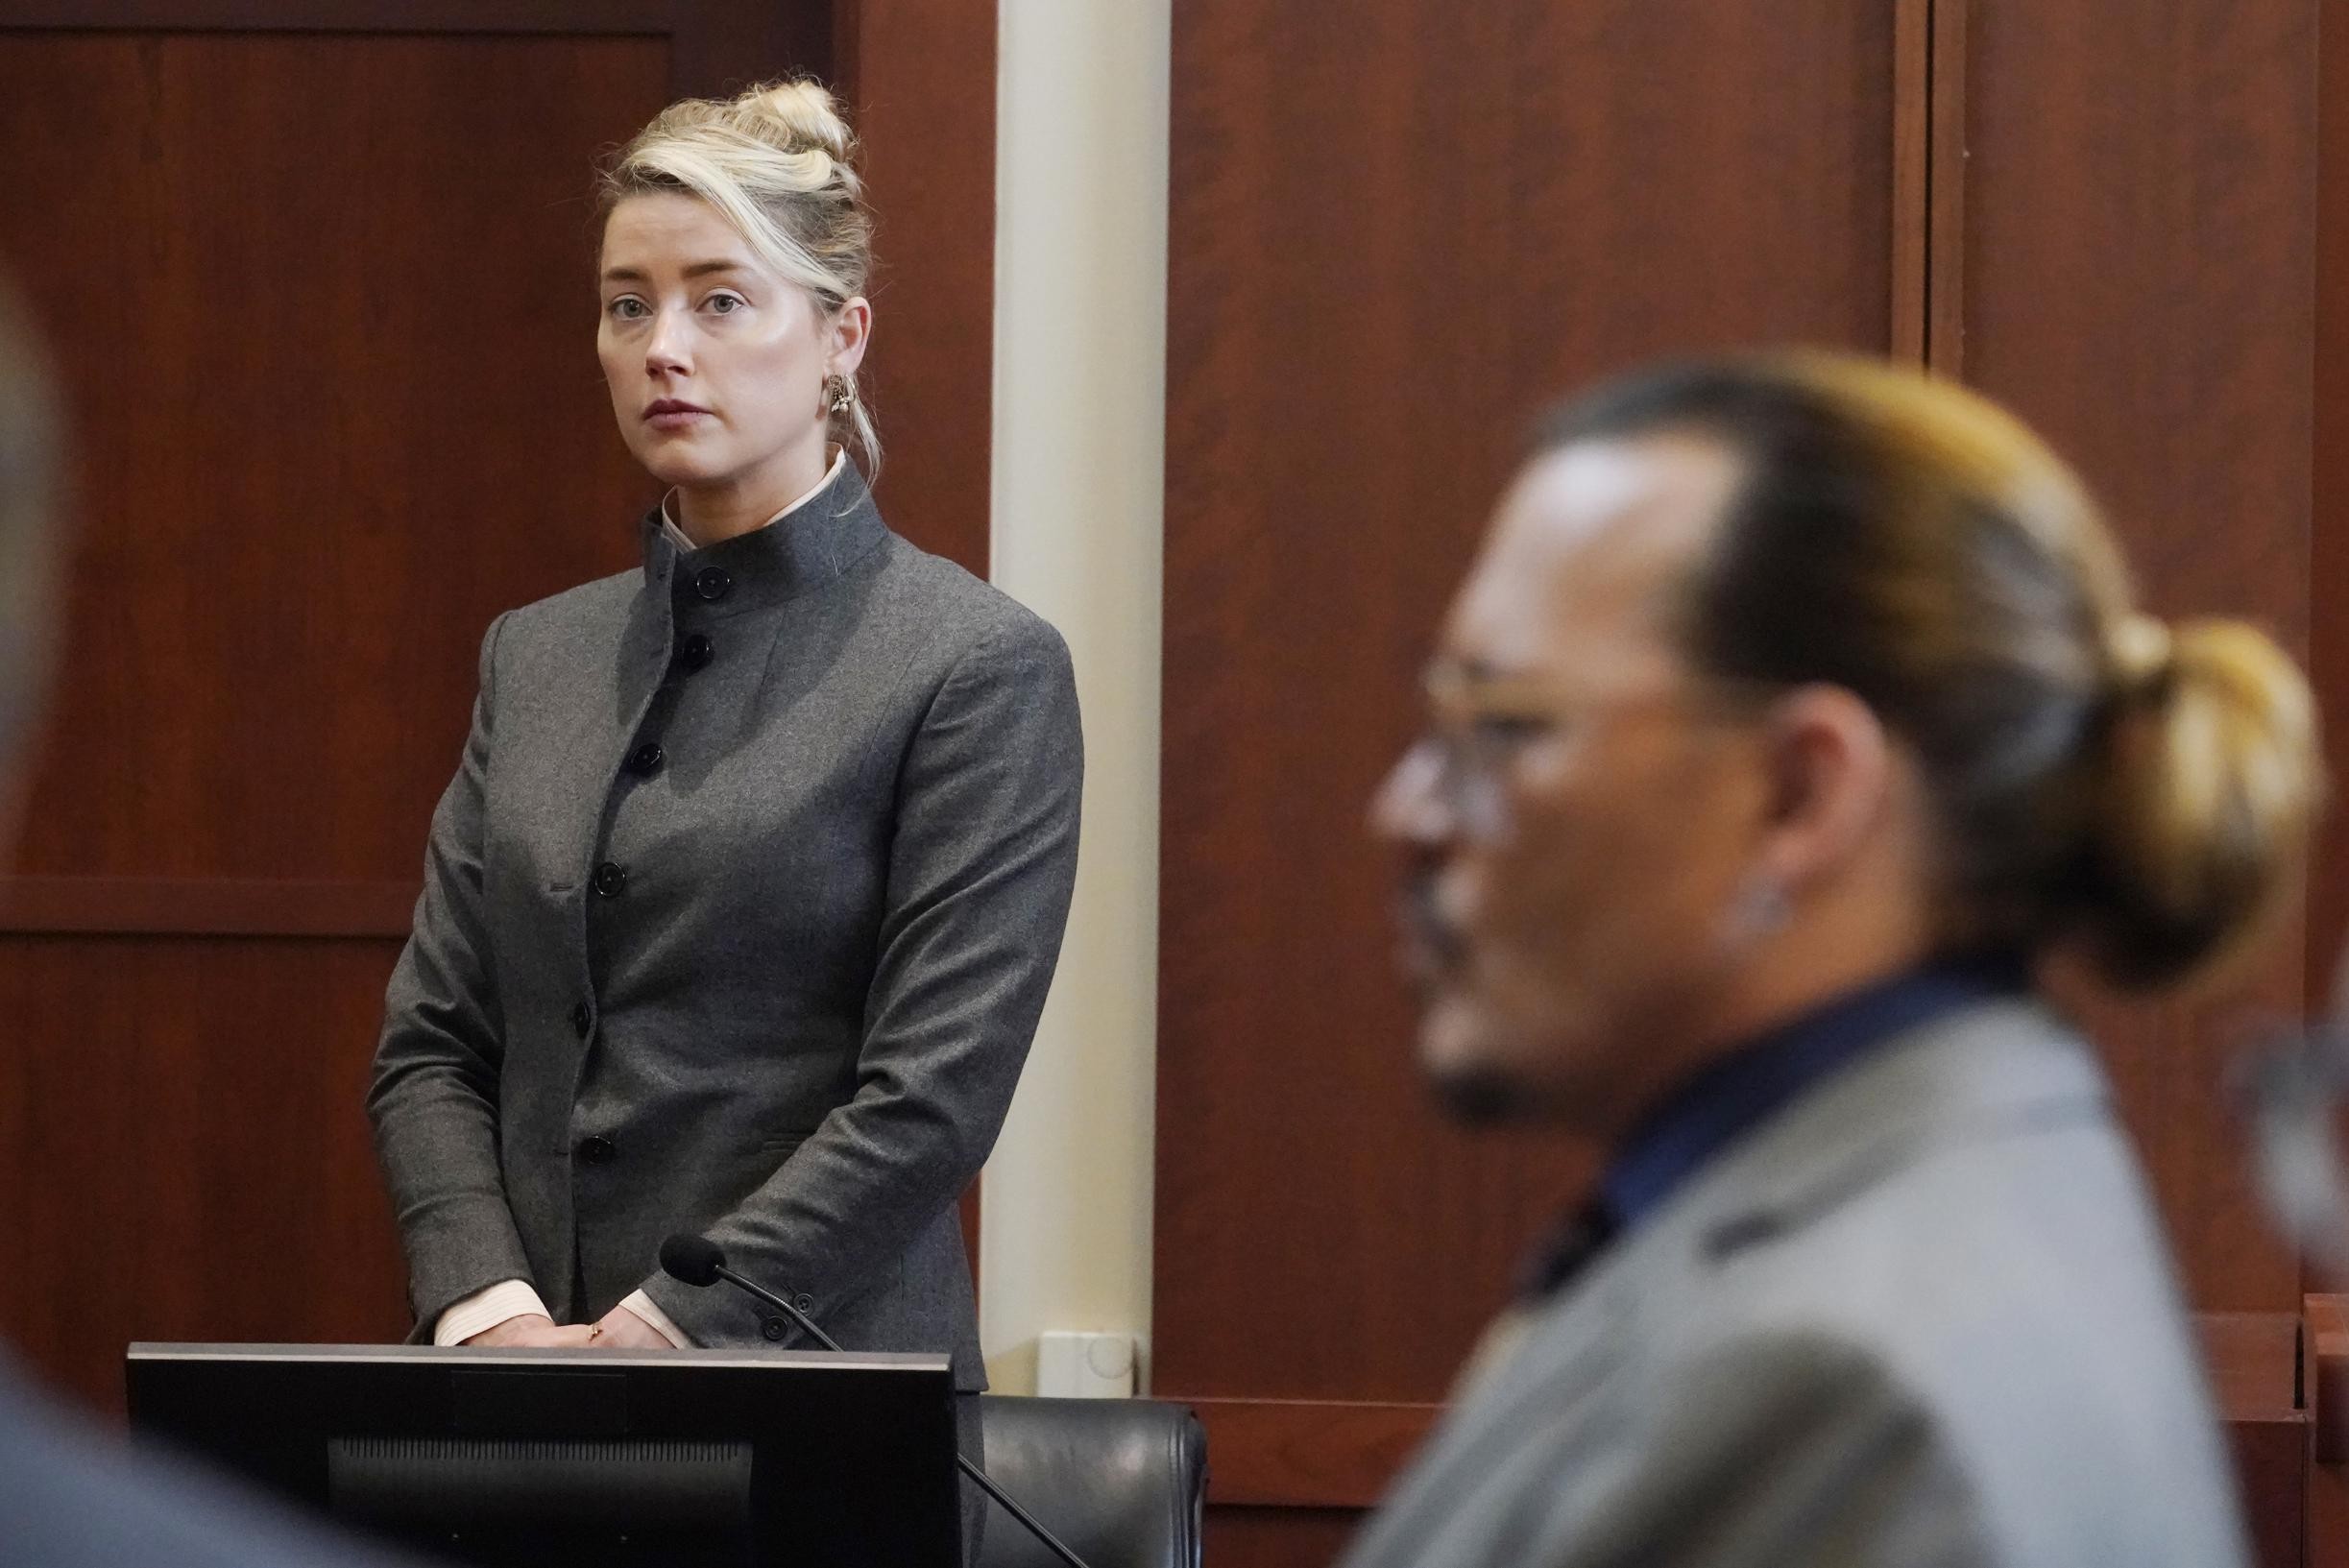 La giuria è divisa nel processo a Johnny Depp e Amber Heard senza decisione